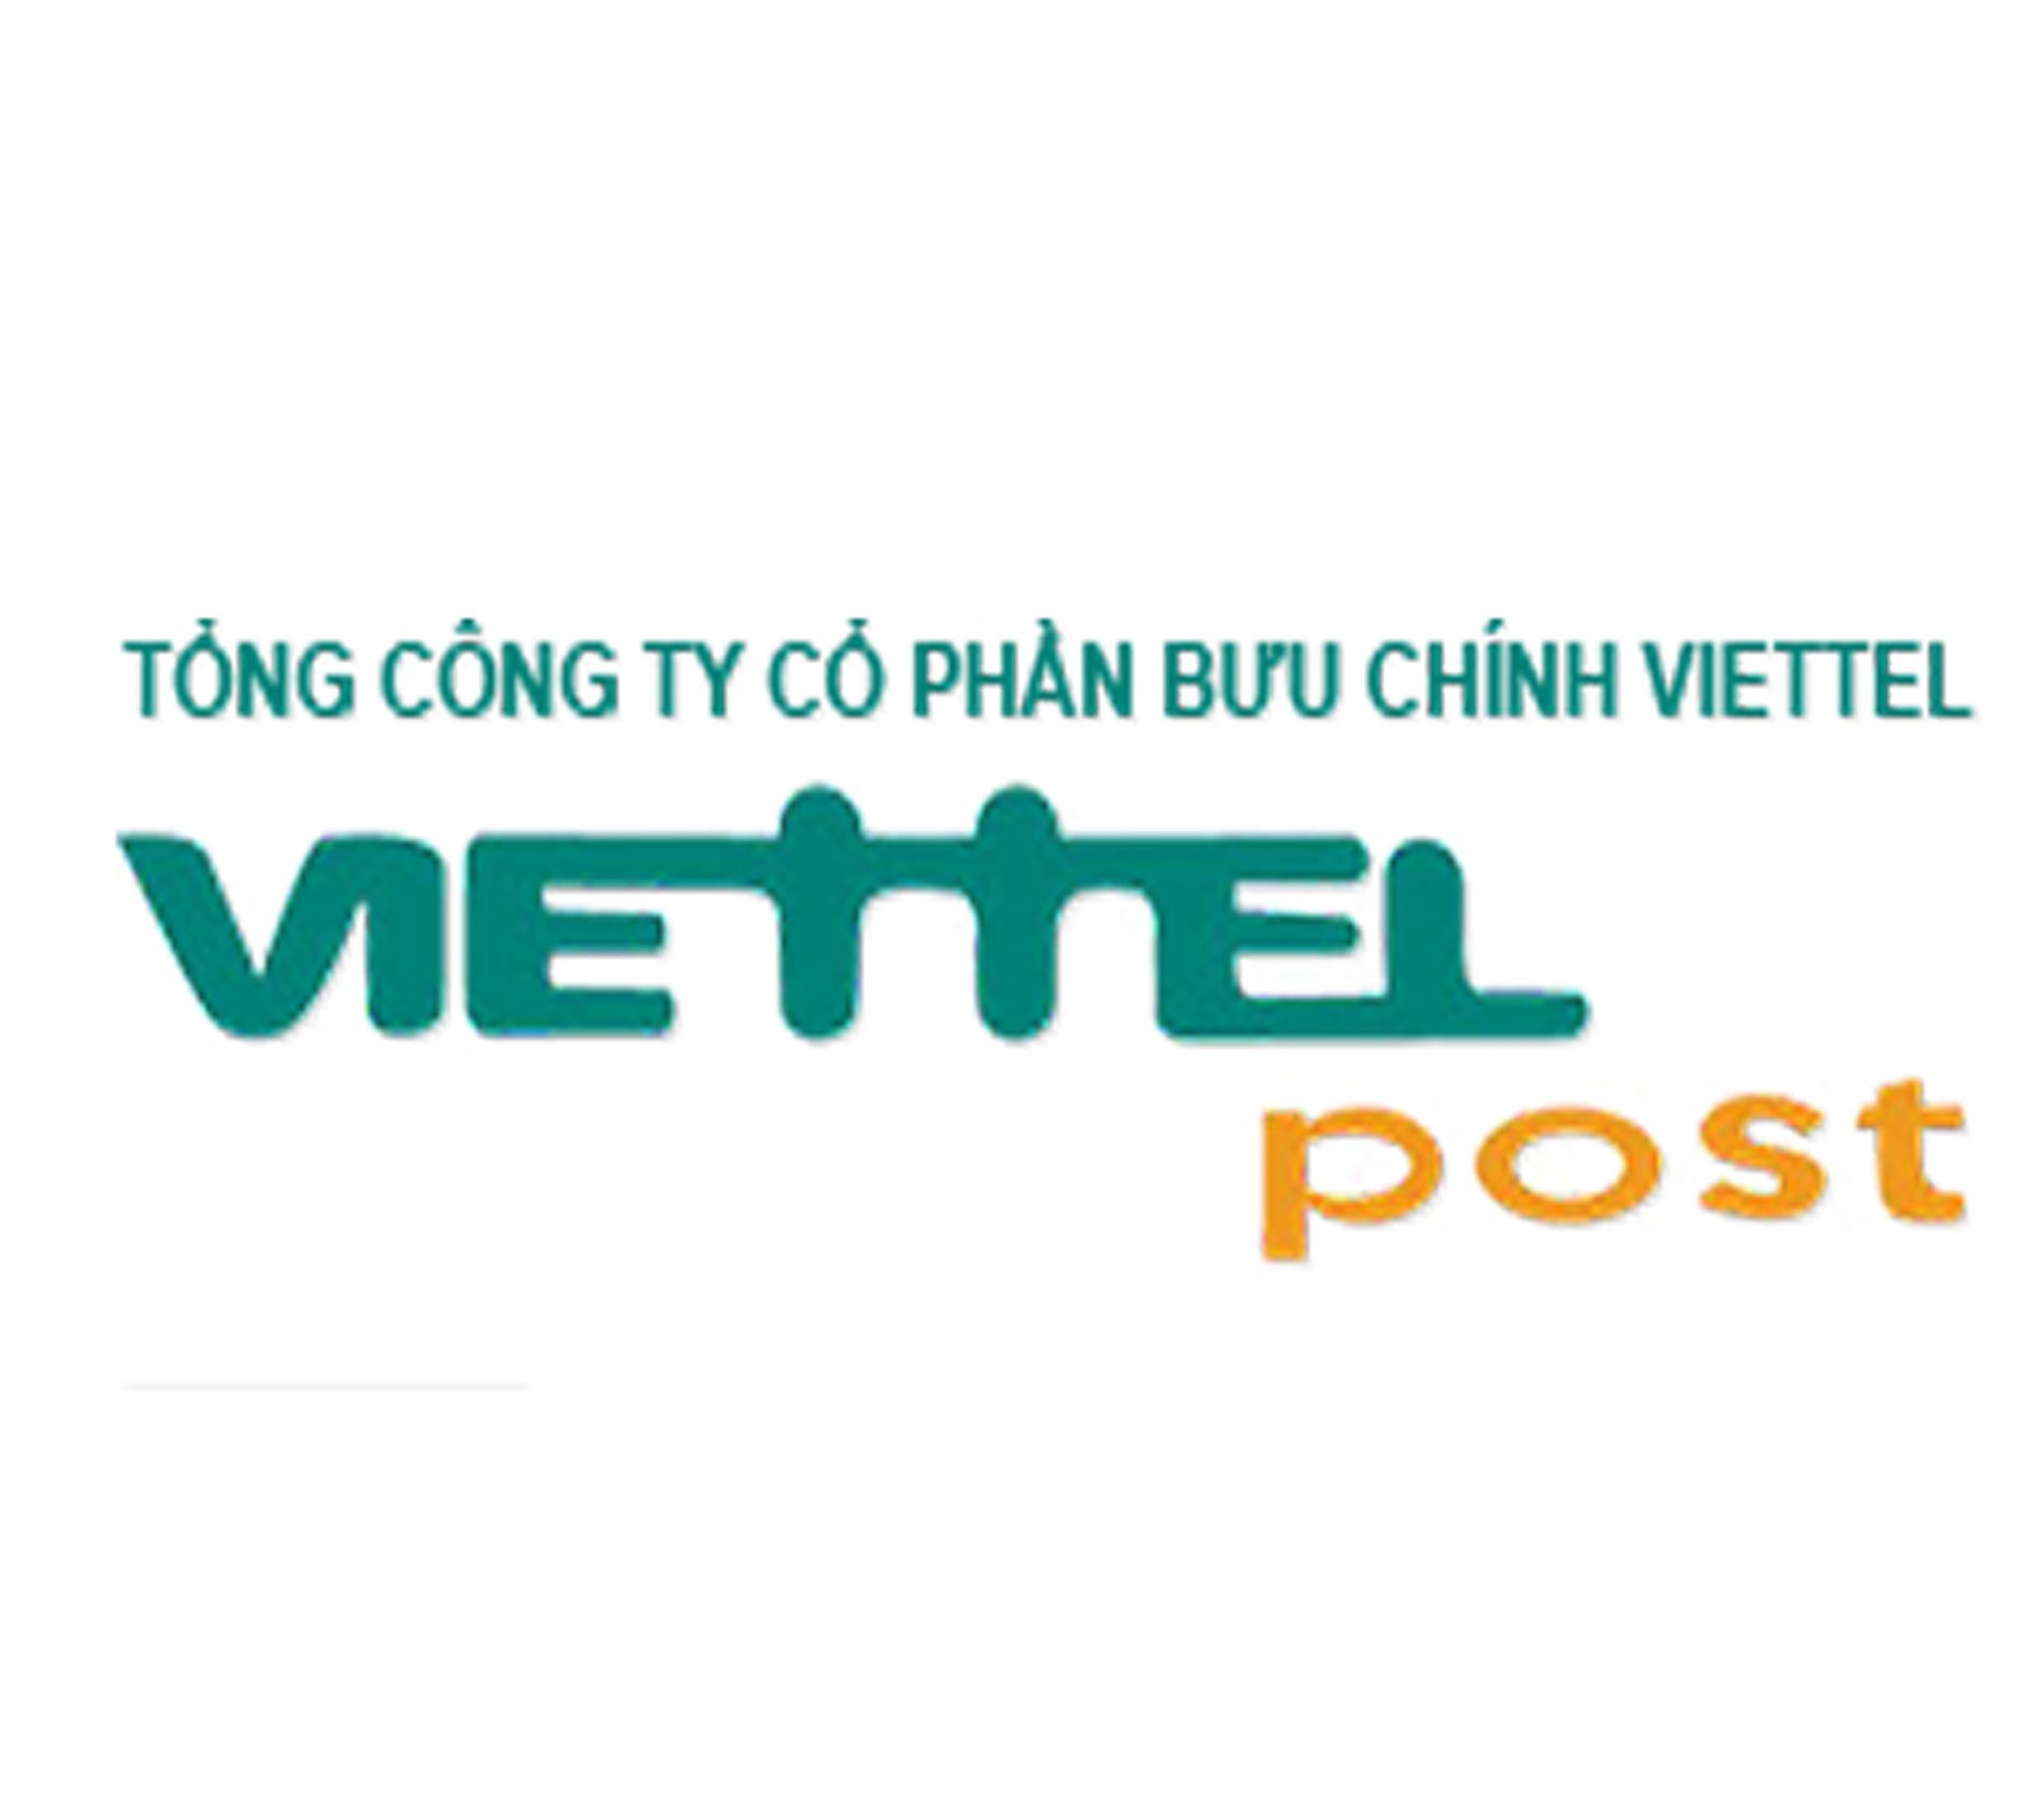 Tổng công ty cổ phần bưu chính Viettel